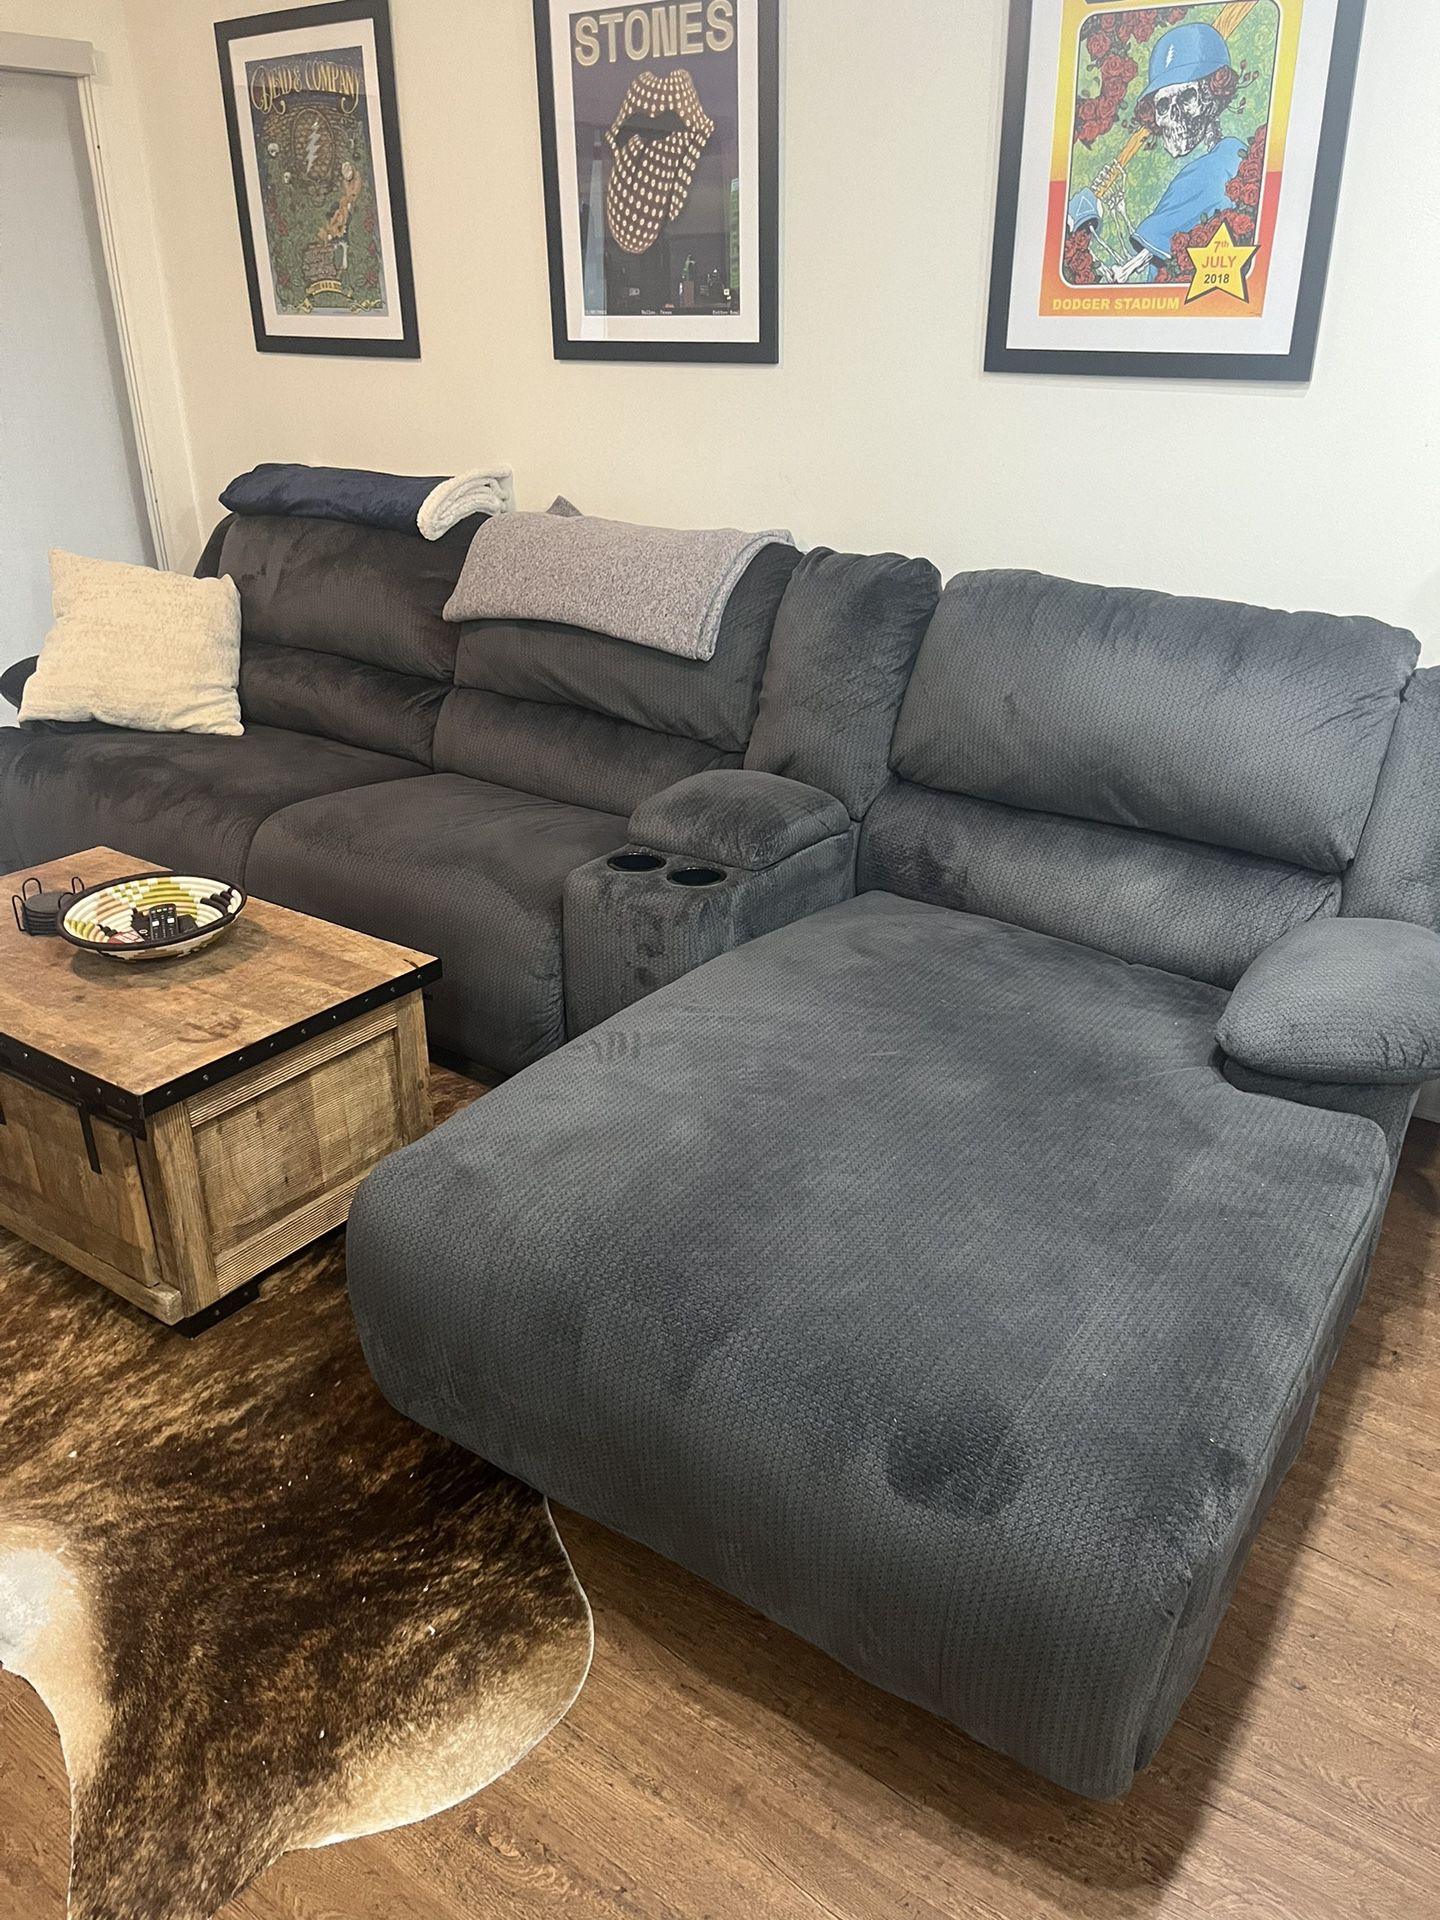 Comfy Recliner Sofa Couch